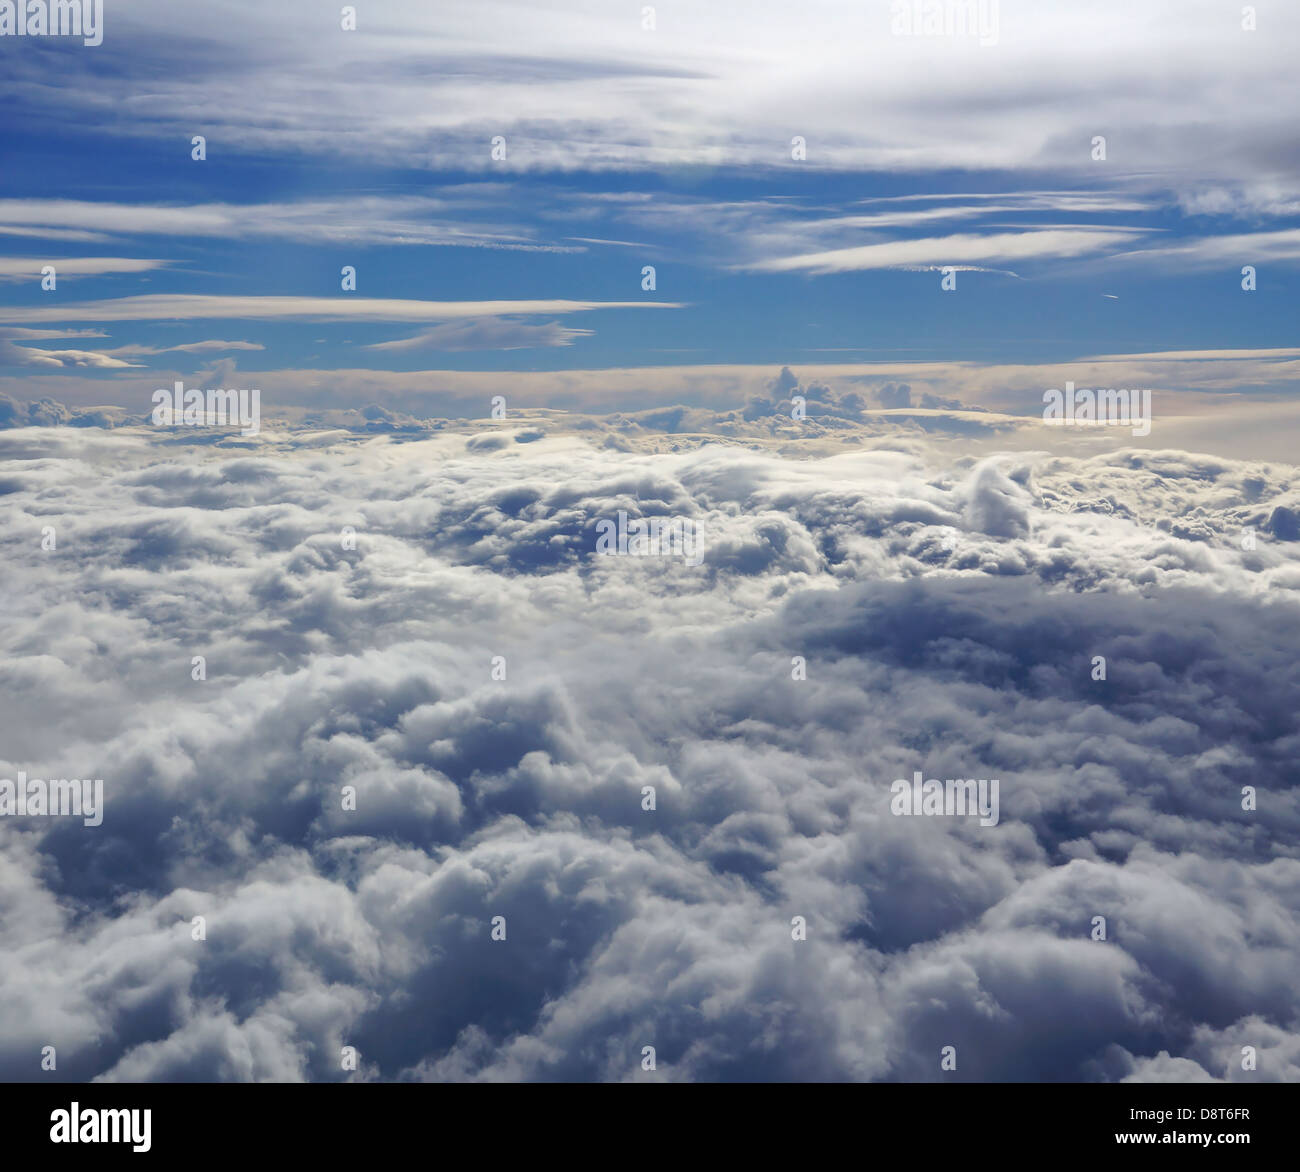 Vista dal cronografo Hublot di un aereo in volo in un cielo nuvoloso Foto Stock